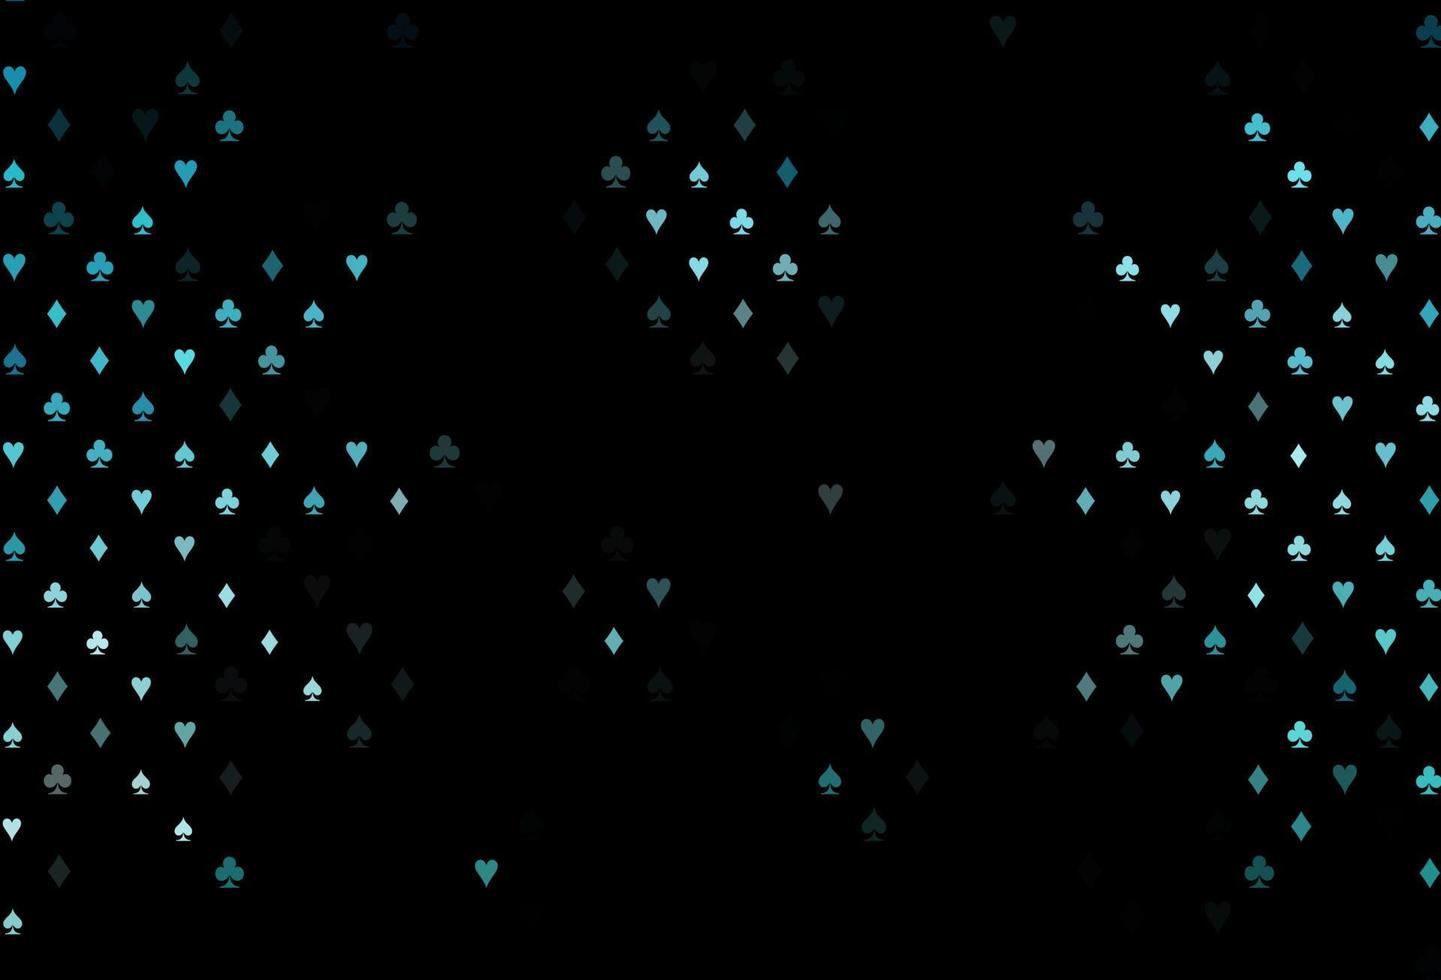 modello vettoriale blu scuro con simboli di poker.